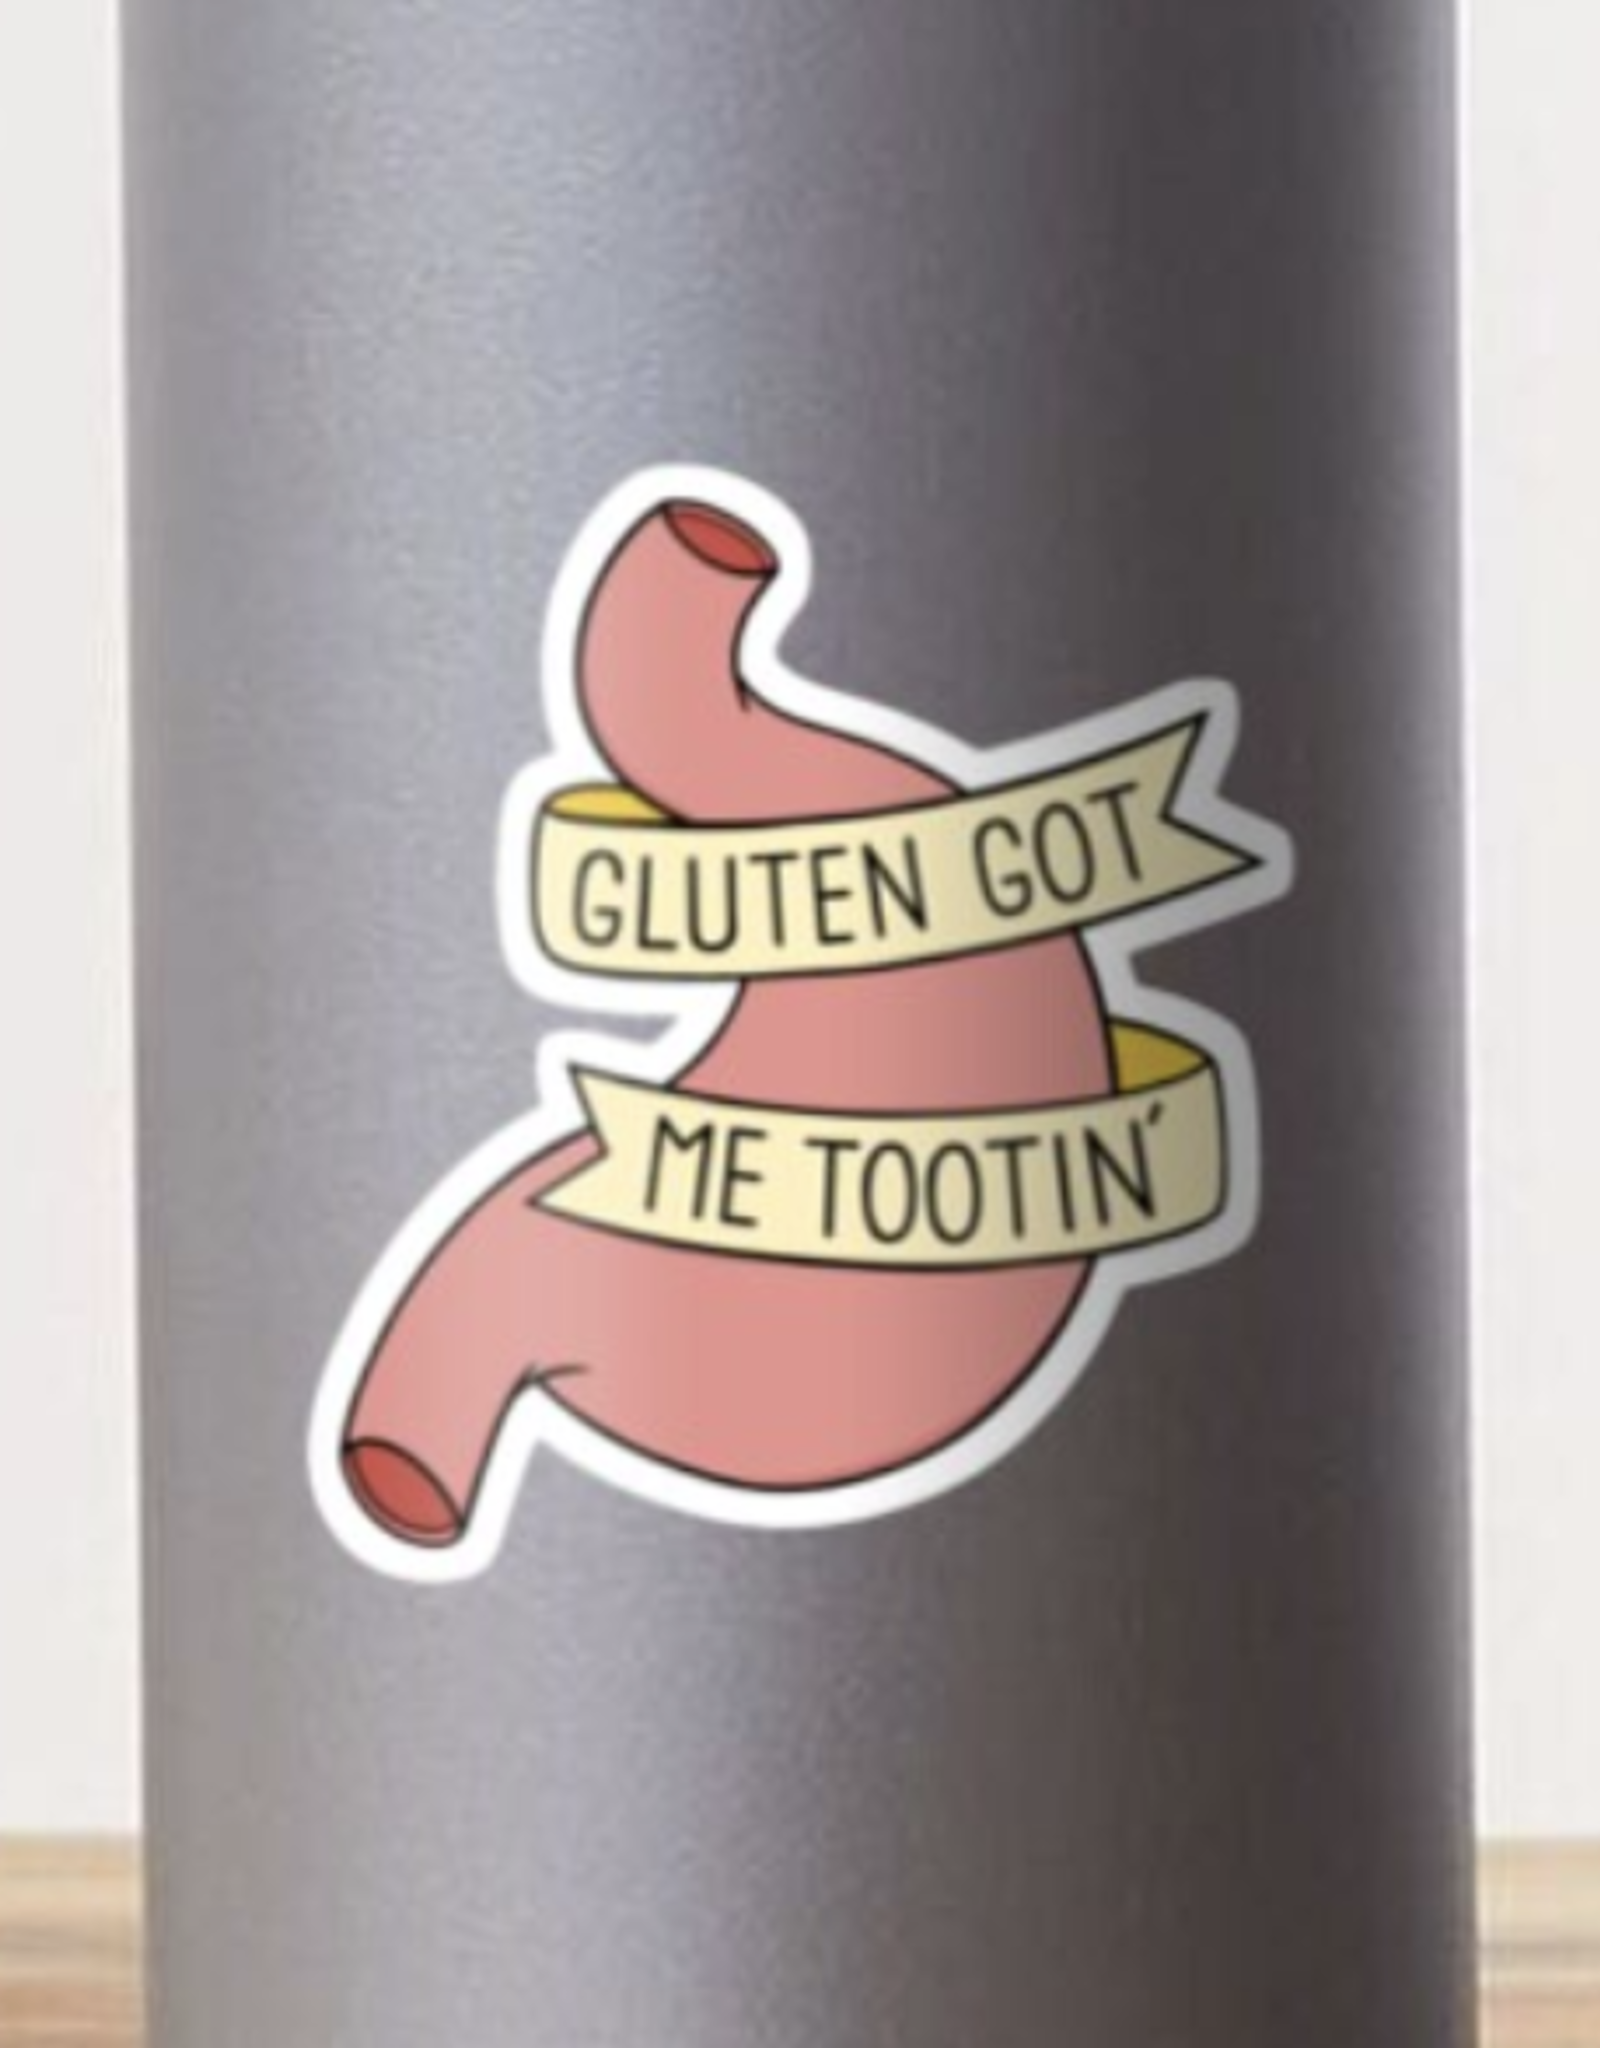 Gluten Allergy Sticker